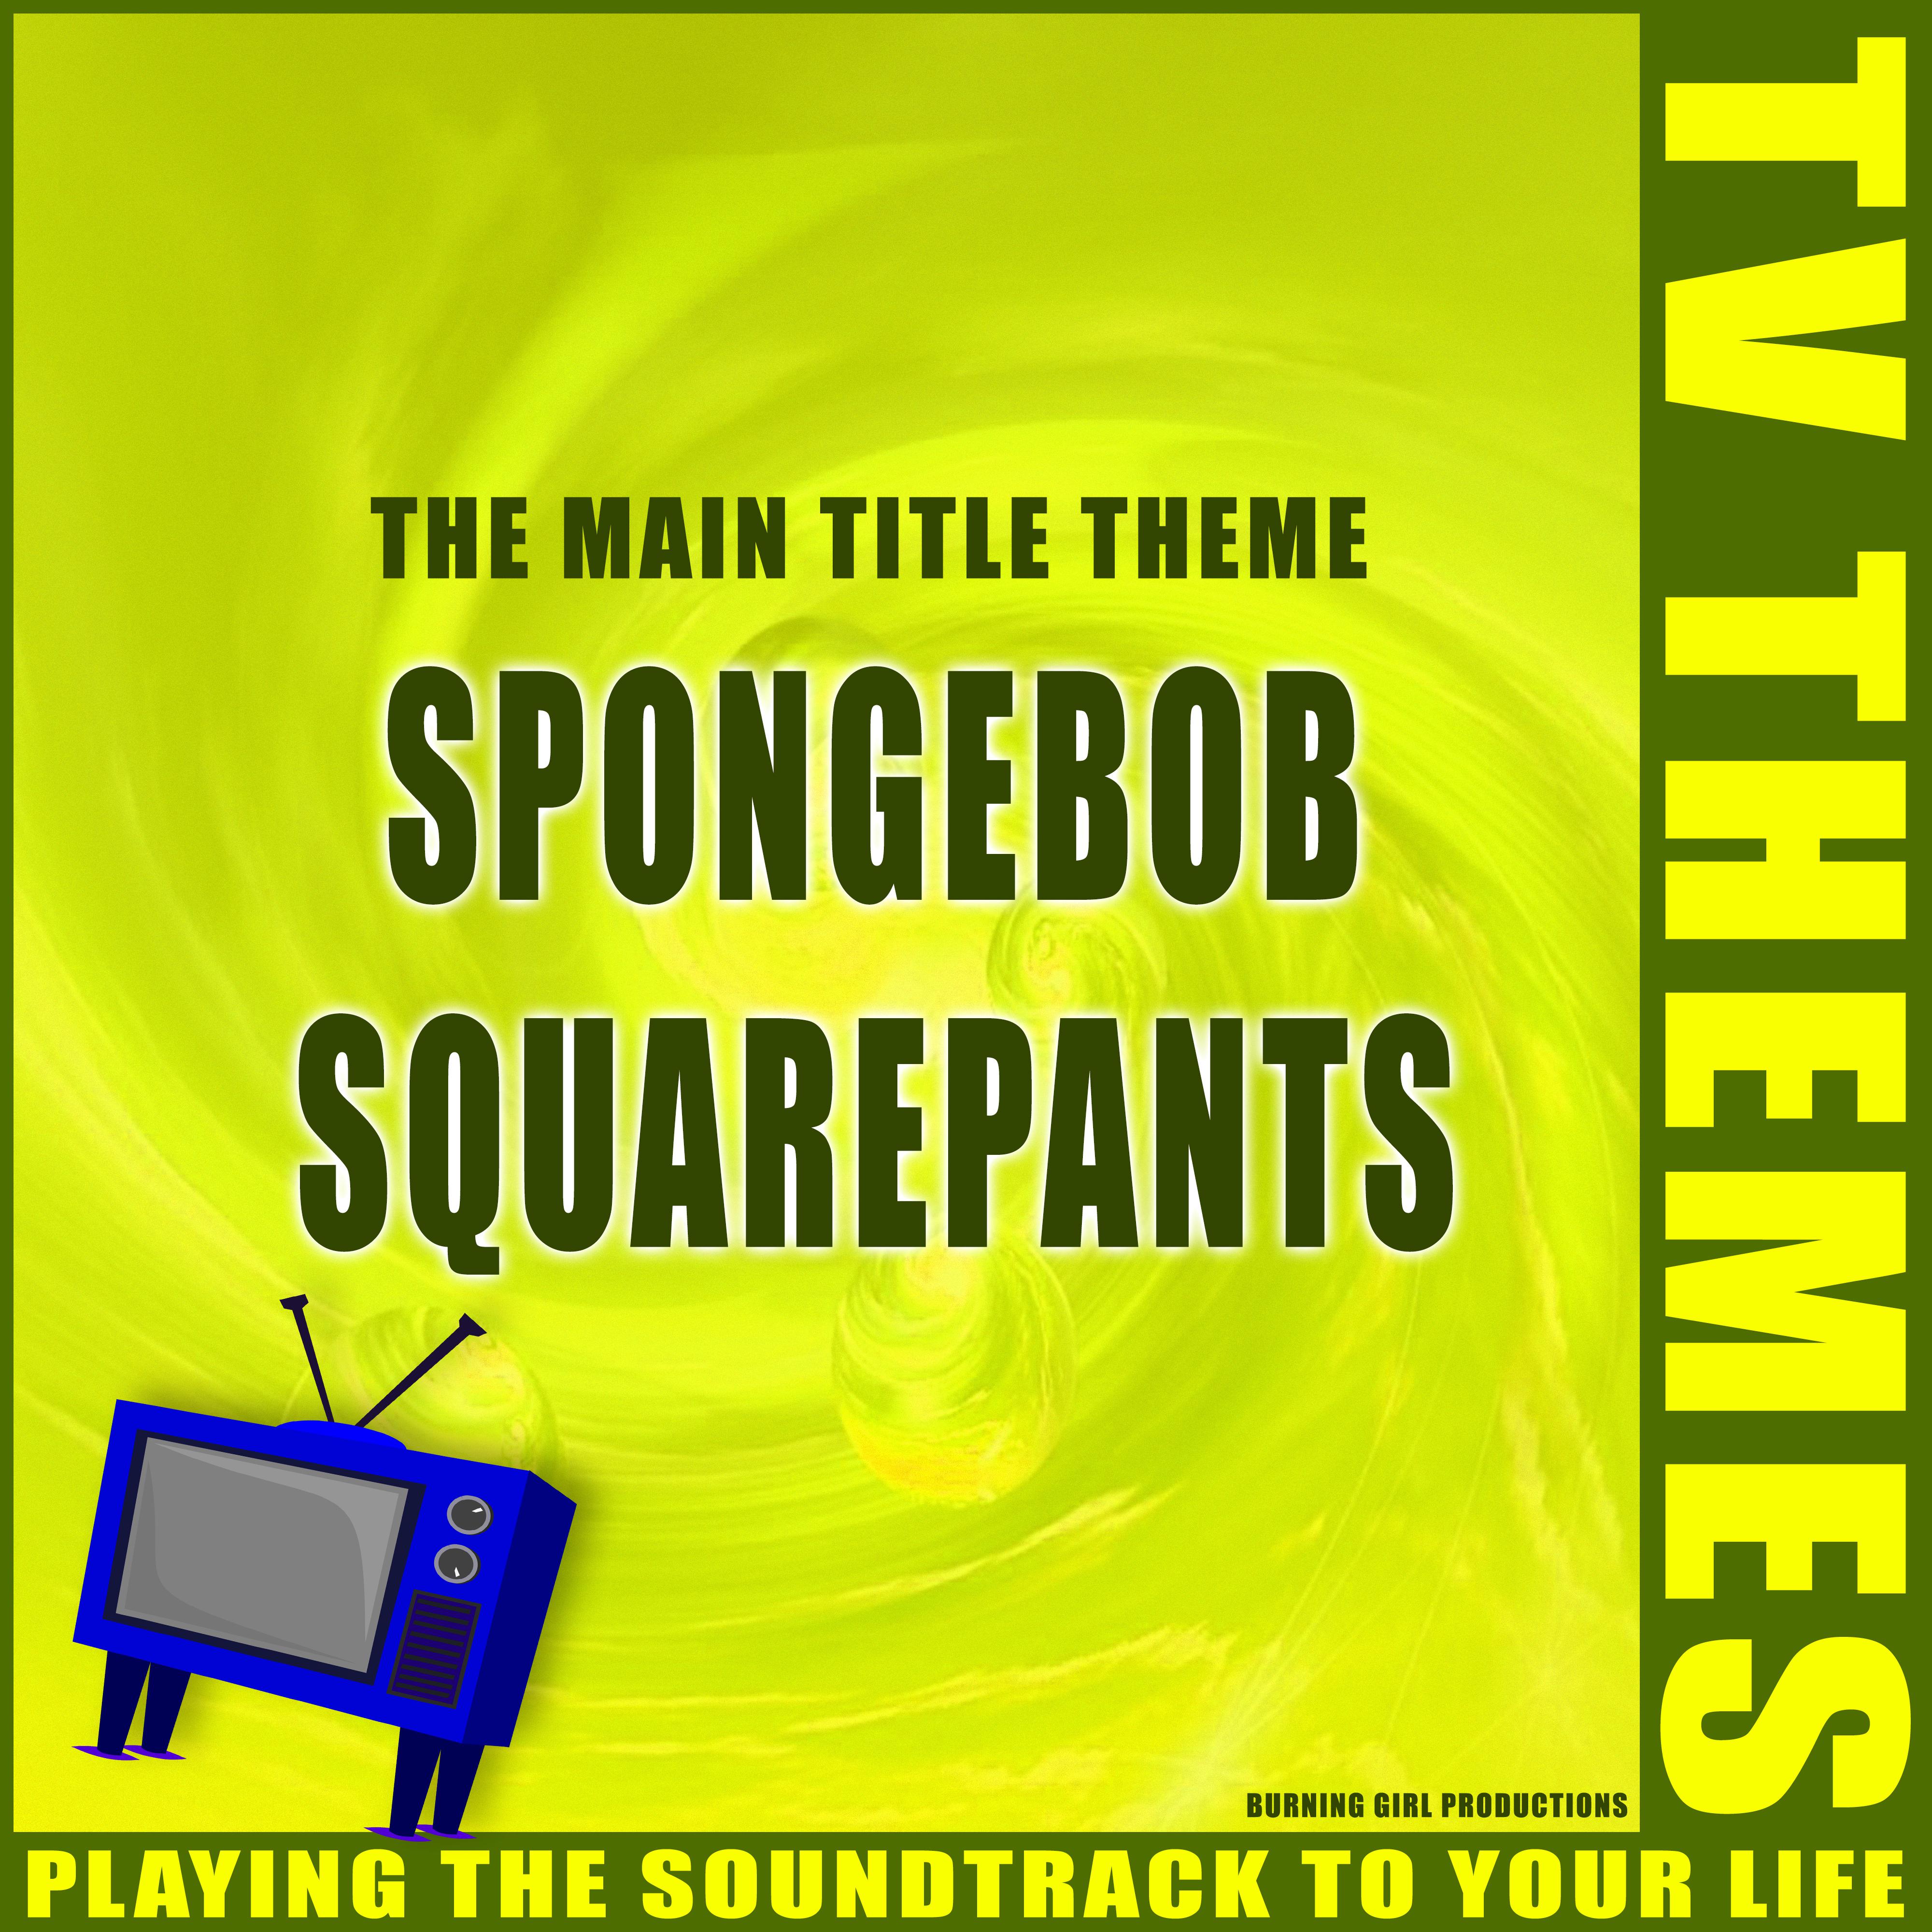 SpongeBob SquarePants - The Main Title Theme